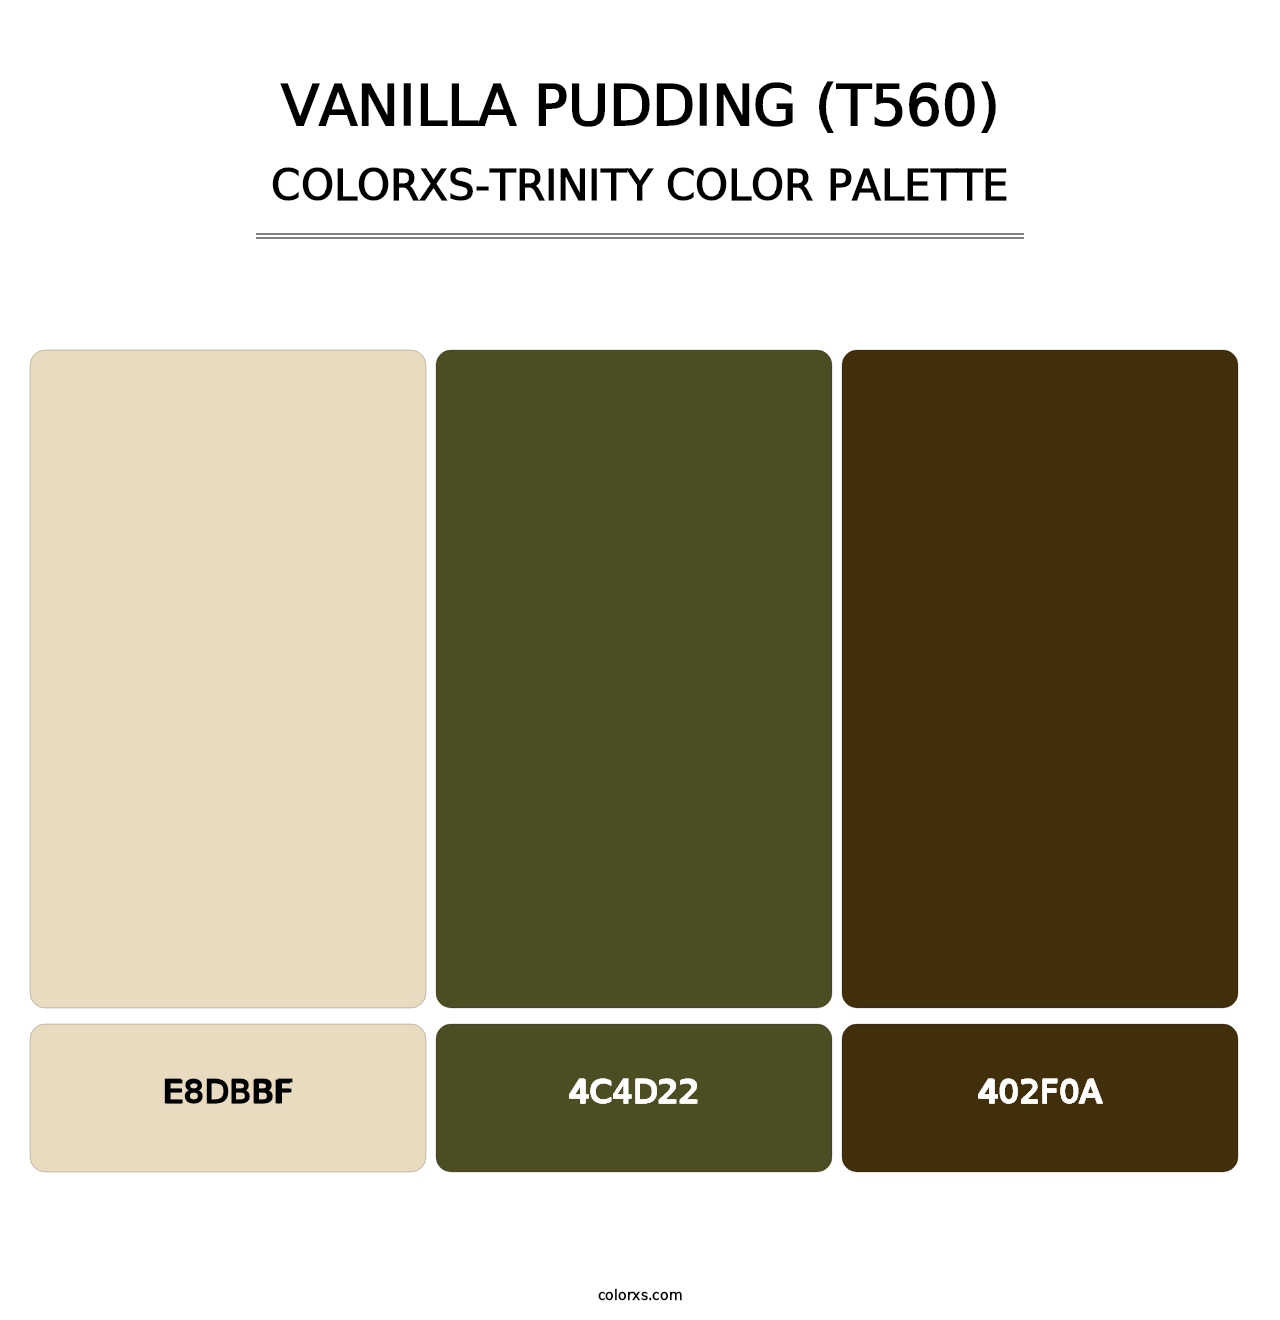 Vanilla Pudding (T560) - Colorxs Trinity Palette